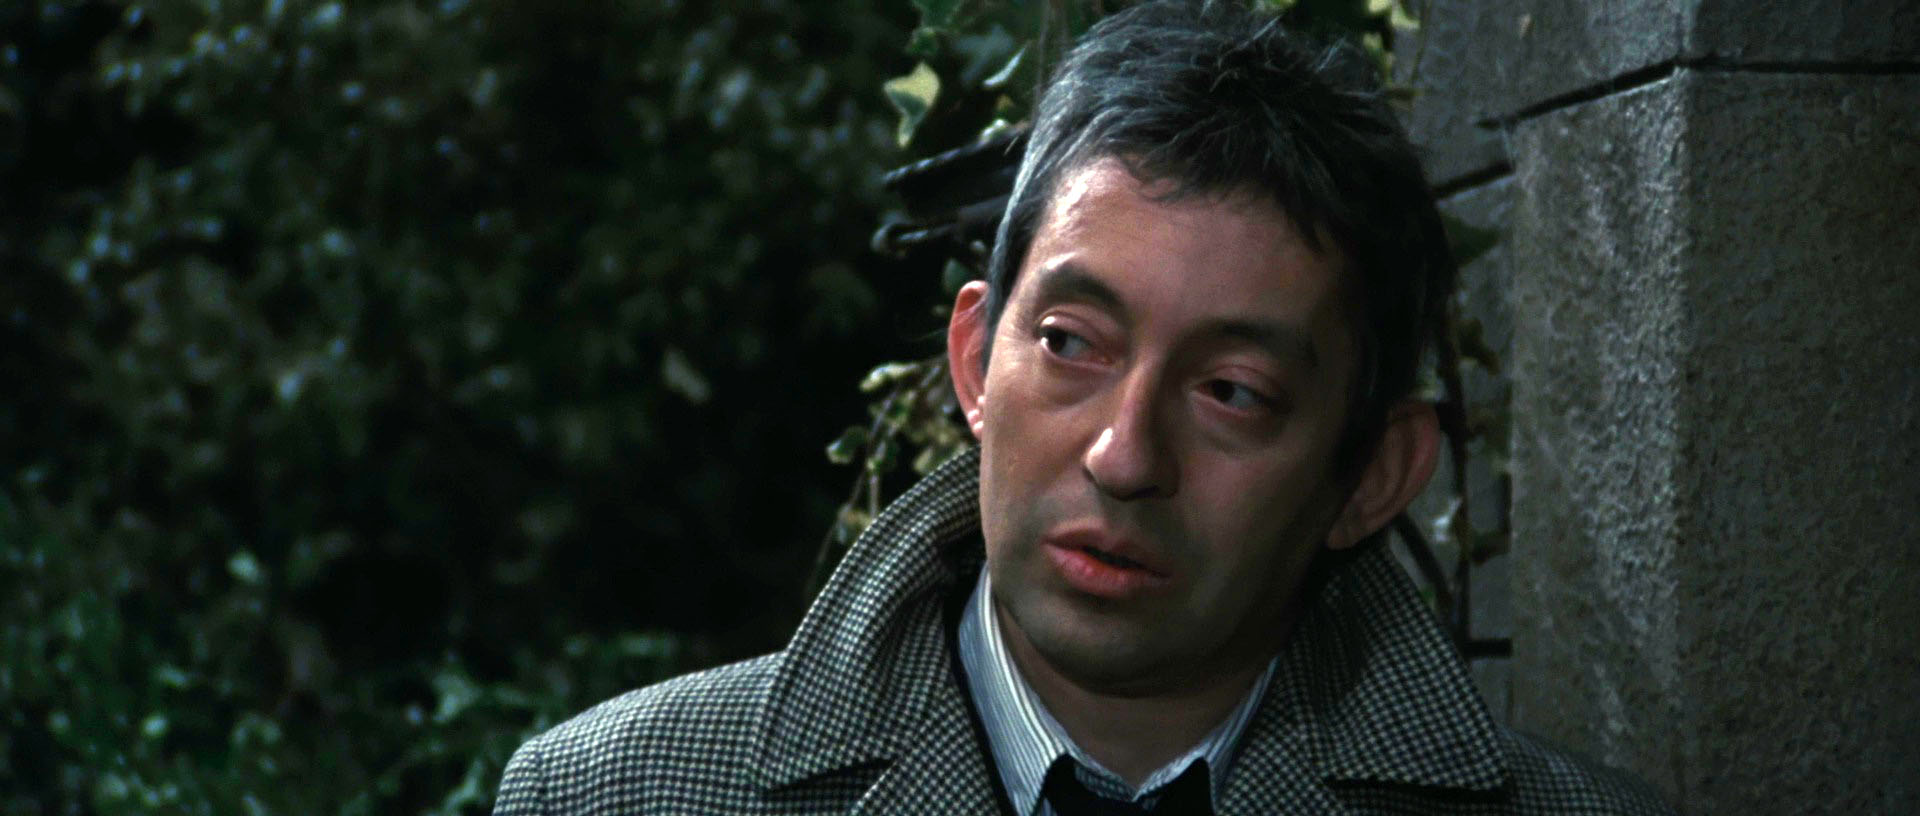 La morte negli occhi del gatto (1973) Serge Gainsbourg.jpg